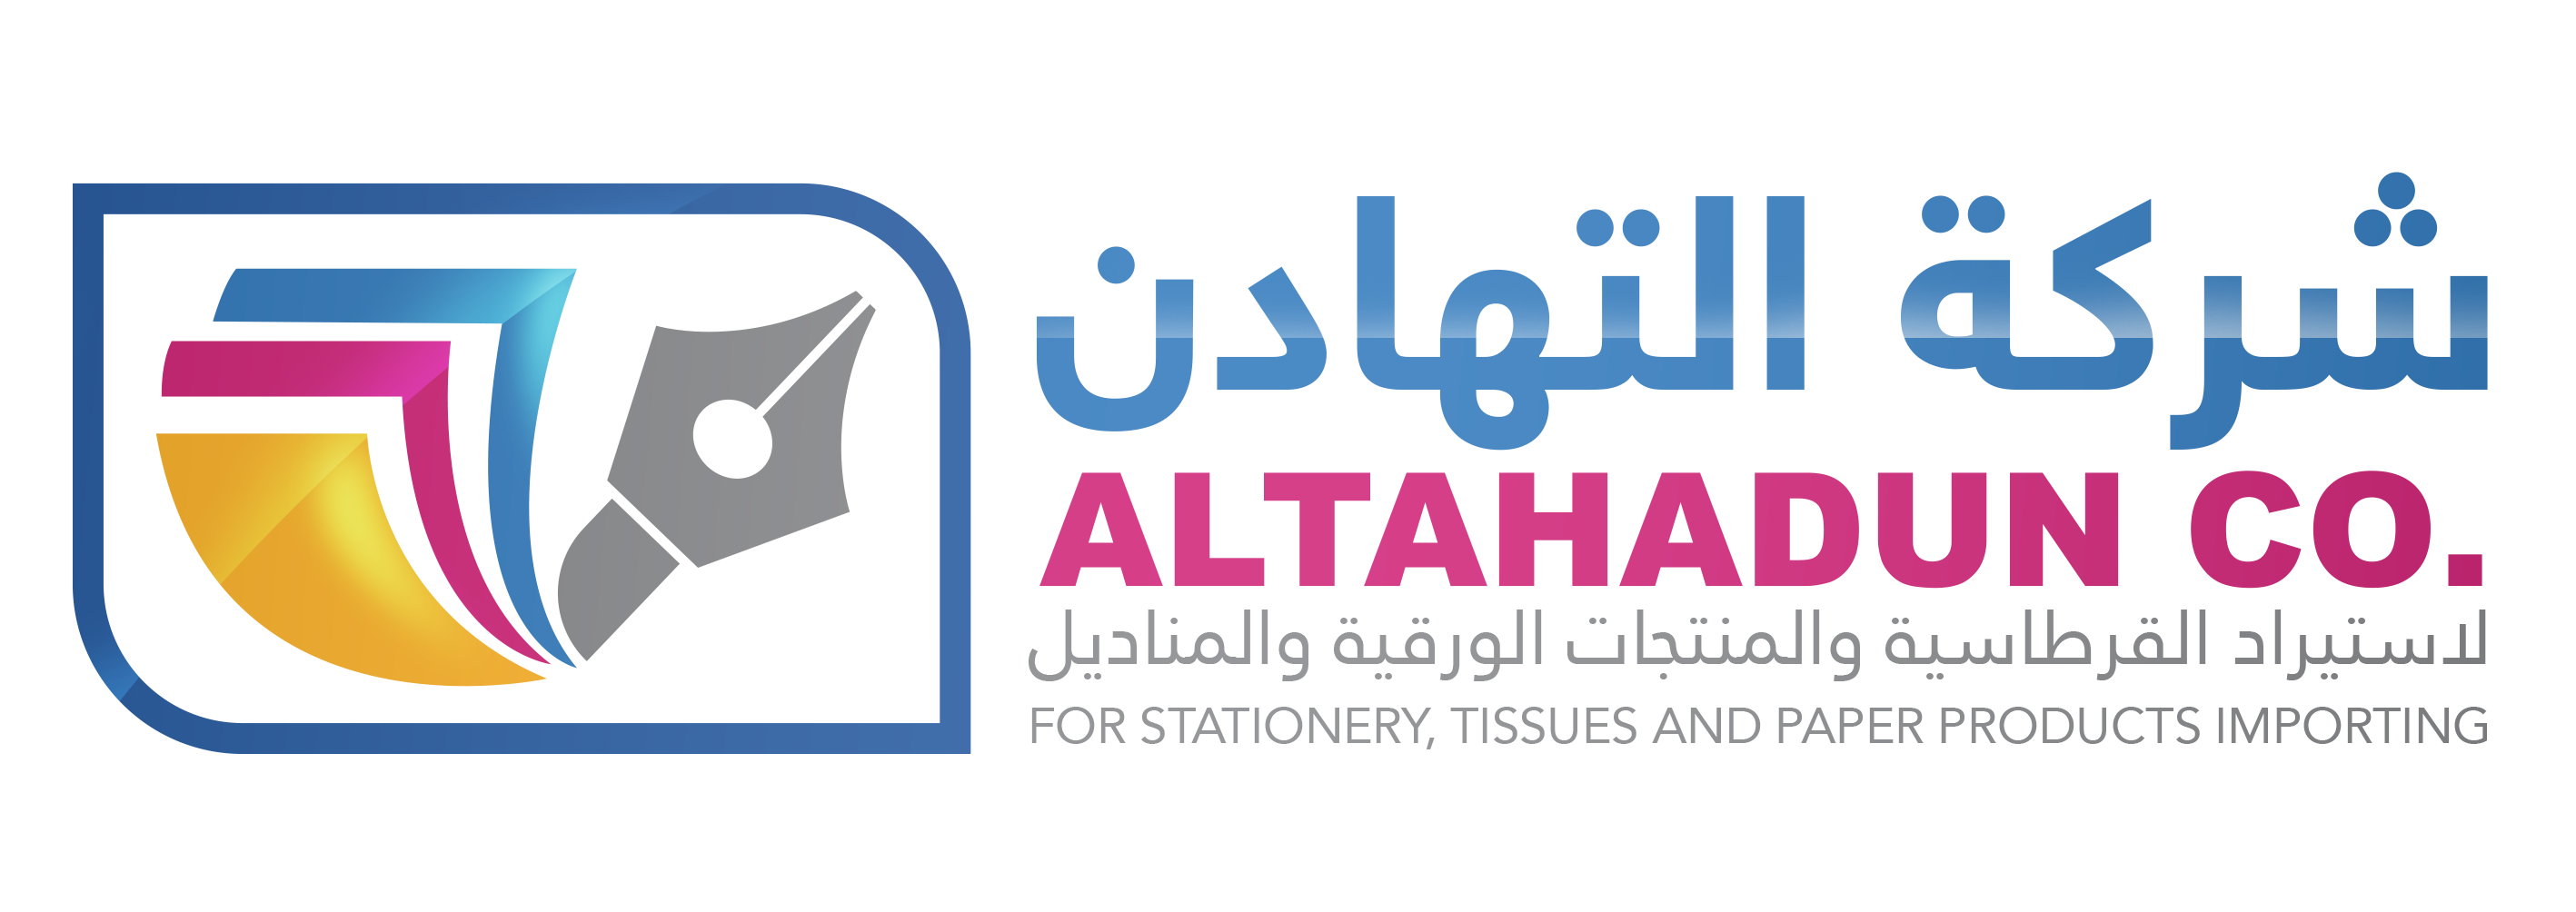 Al-Tahadun Co, stationery Supply